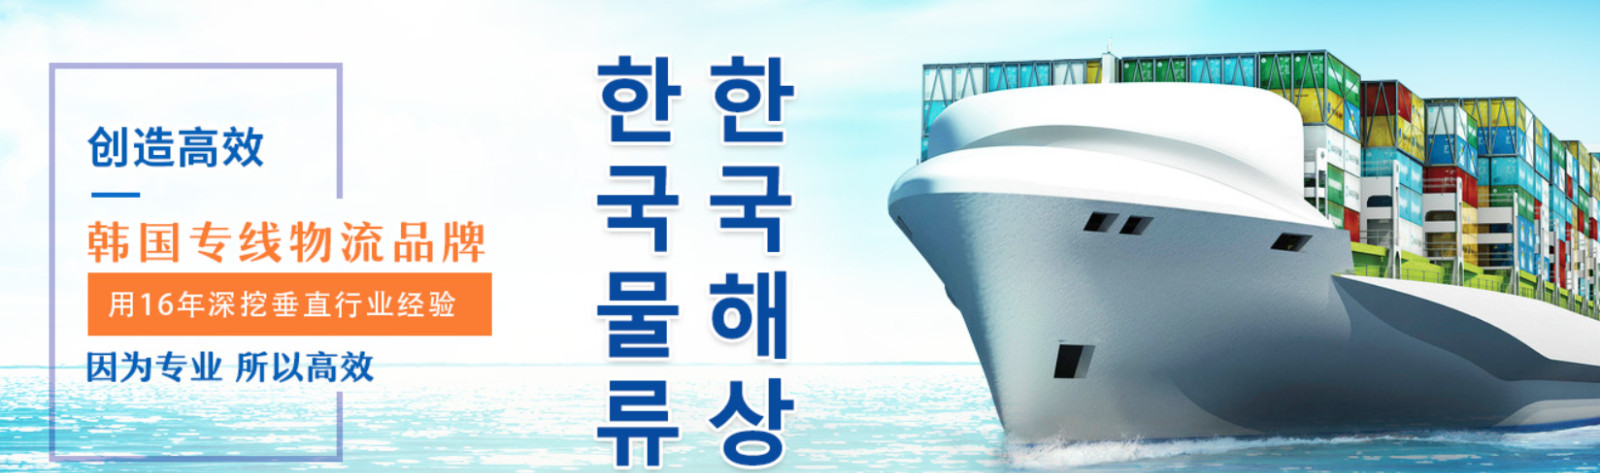 韩国货货运代理 韩国国际物流公司  韩国进出口报关公司 韩国国际货运代理有限公司